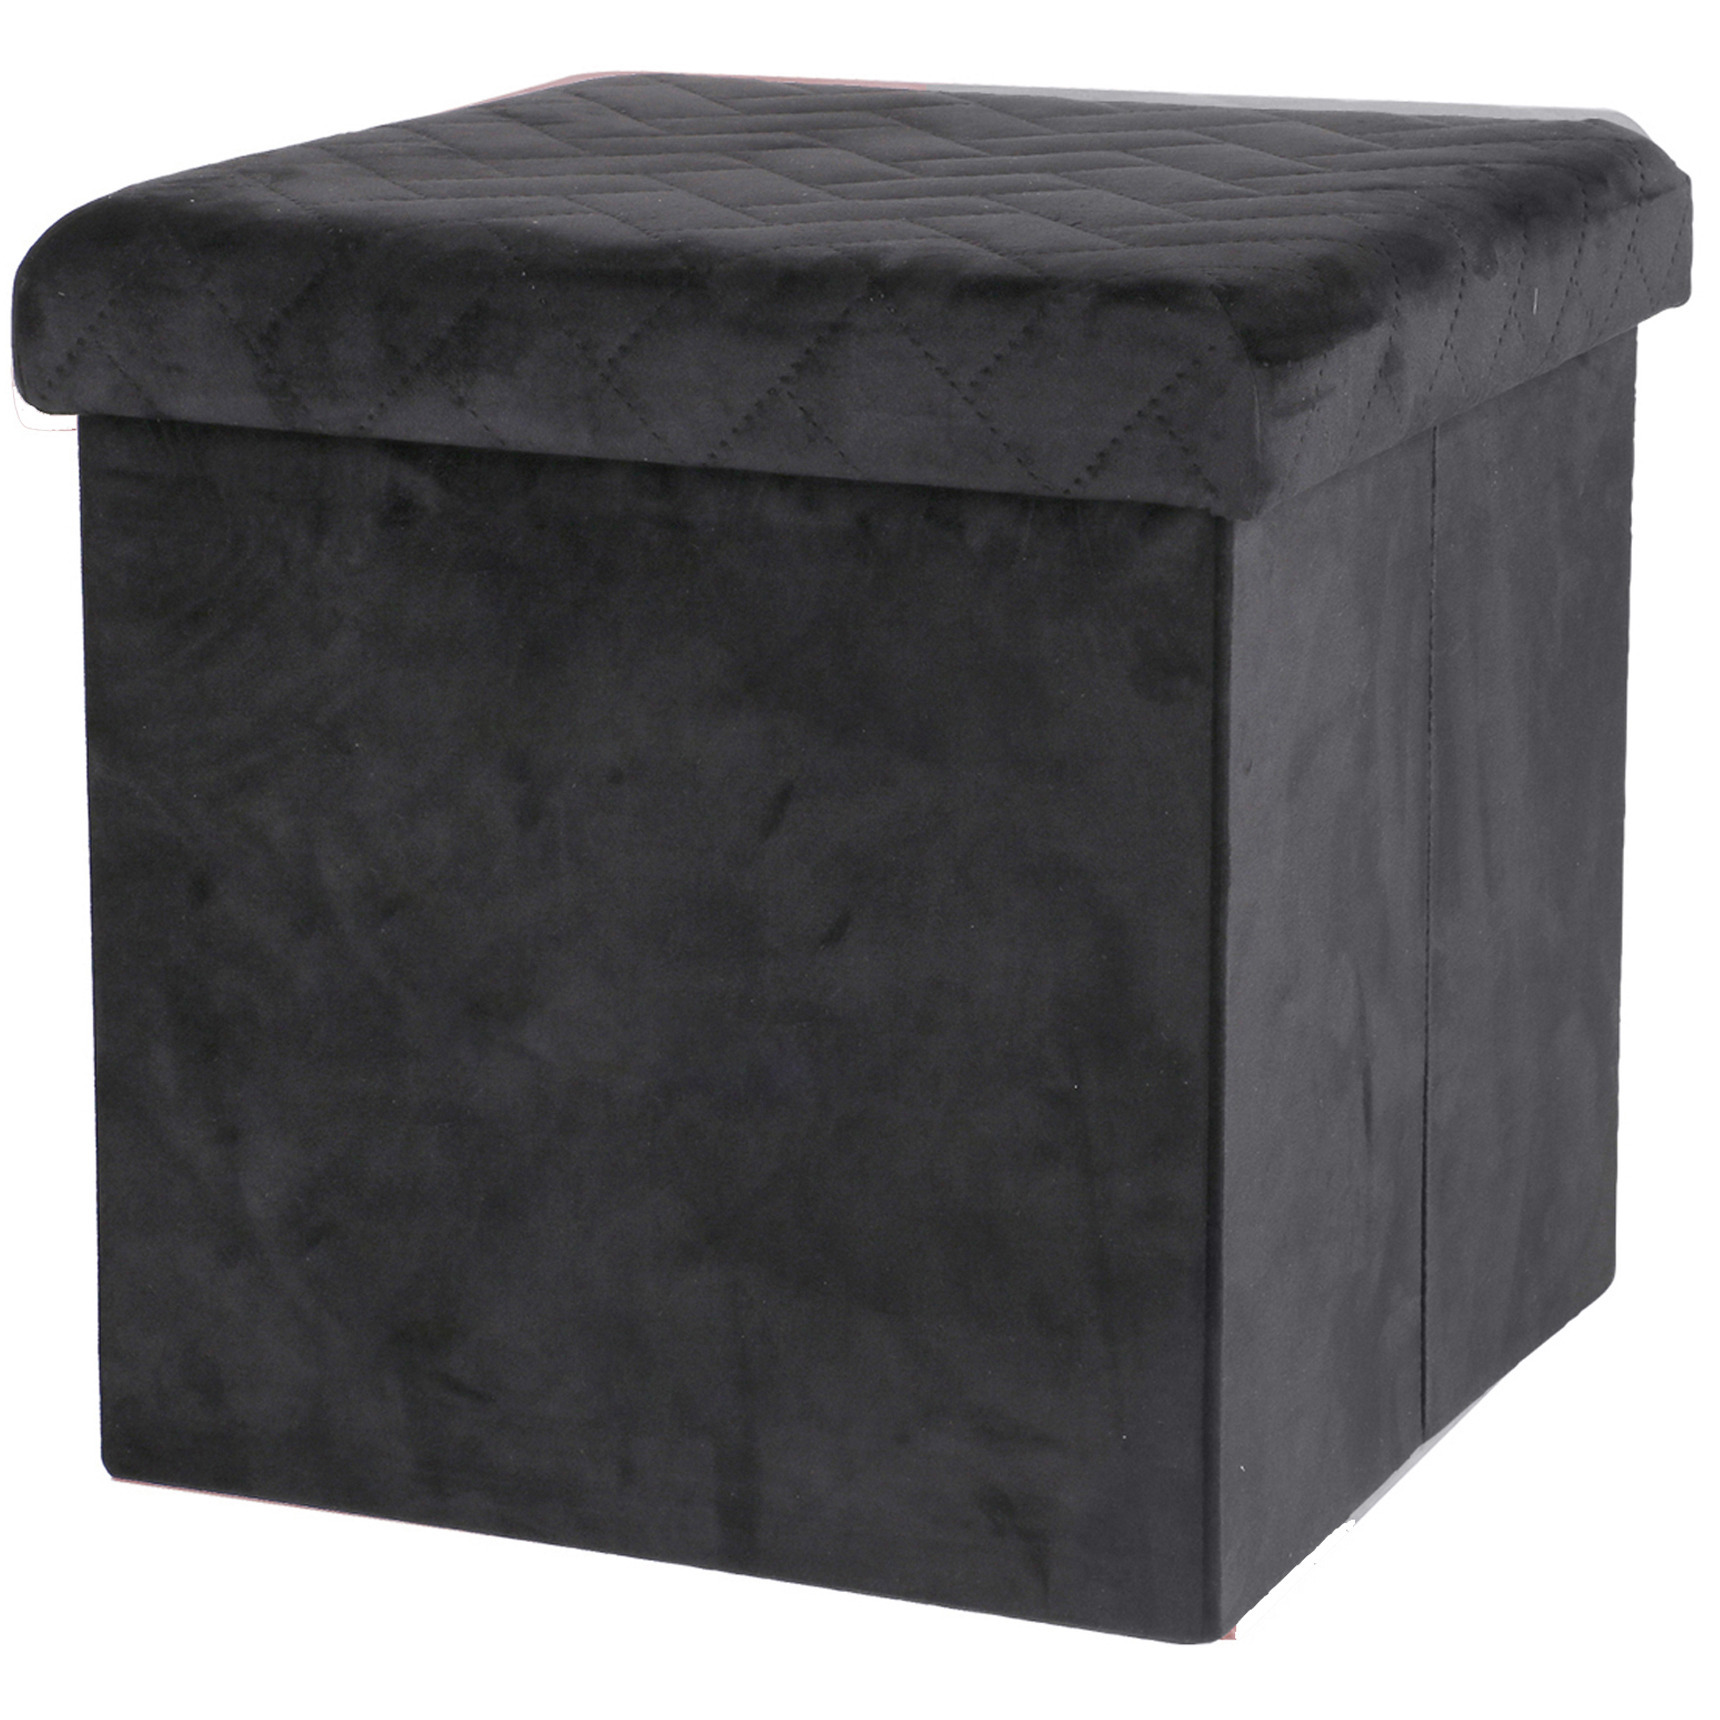 Poef-hocker opbergbox zit krukje velvet zwart polyester-mdf 38 x 38 cm opvouwbaar